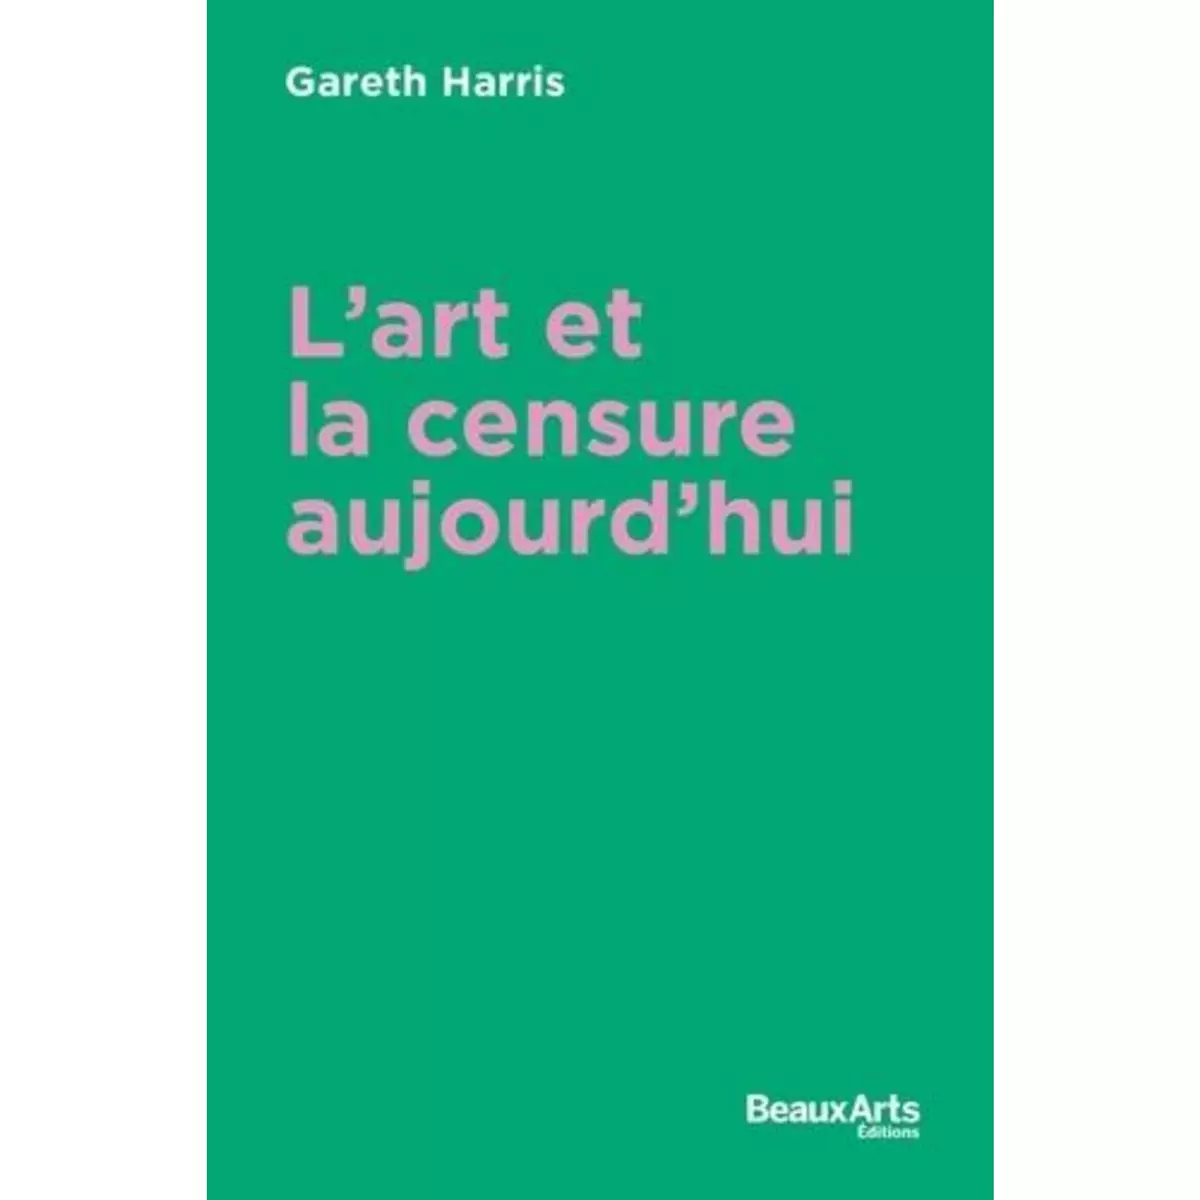  L'ART ET LA CENSURE AUJOURD'HUI, Gareth Harris